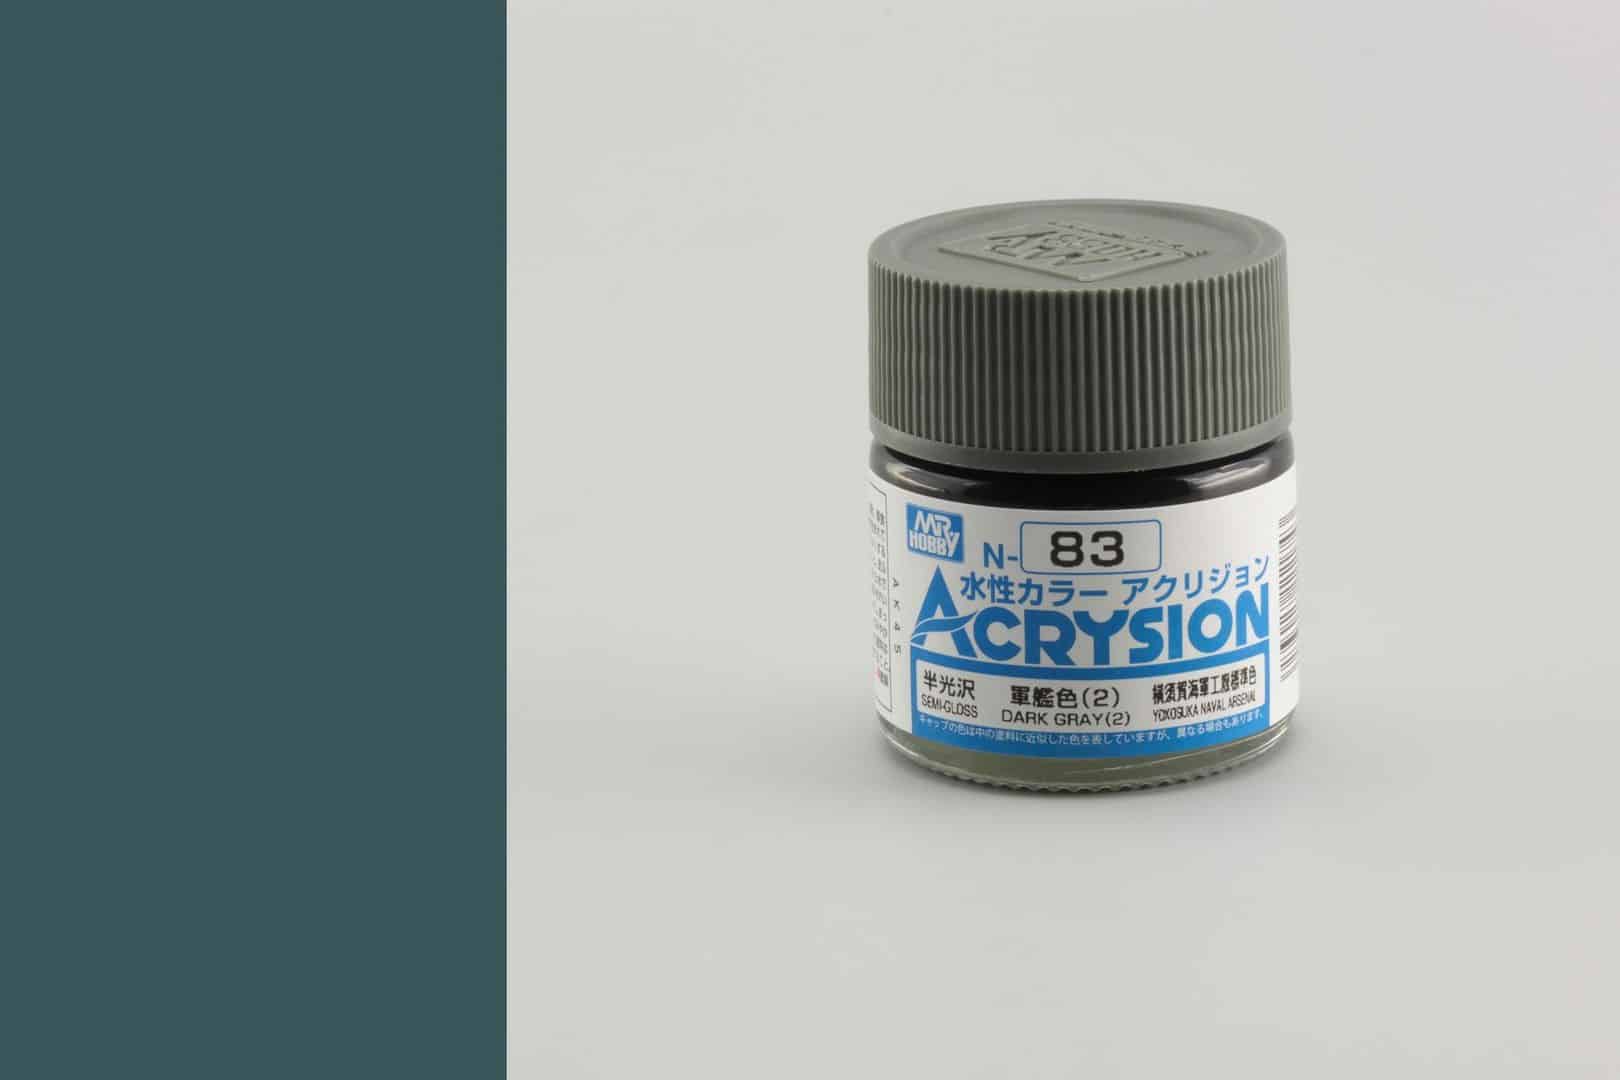 สีสูตรน้ำ Acrysion N83 dark gray (2)